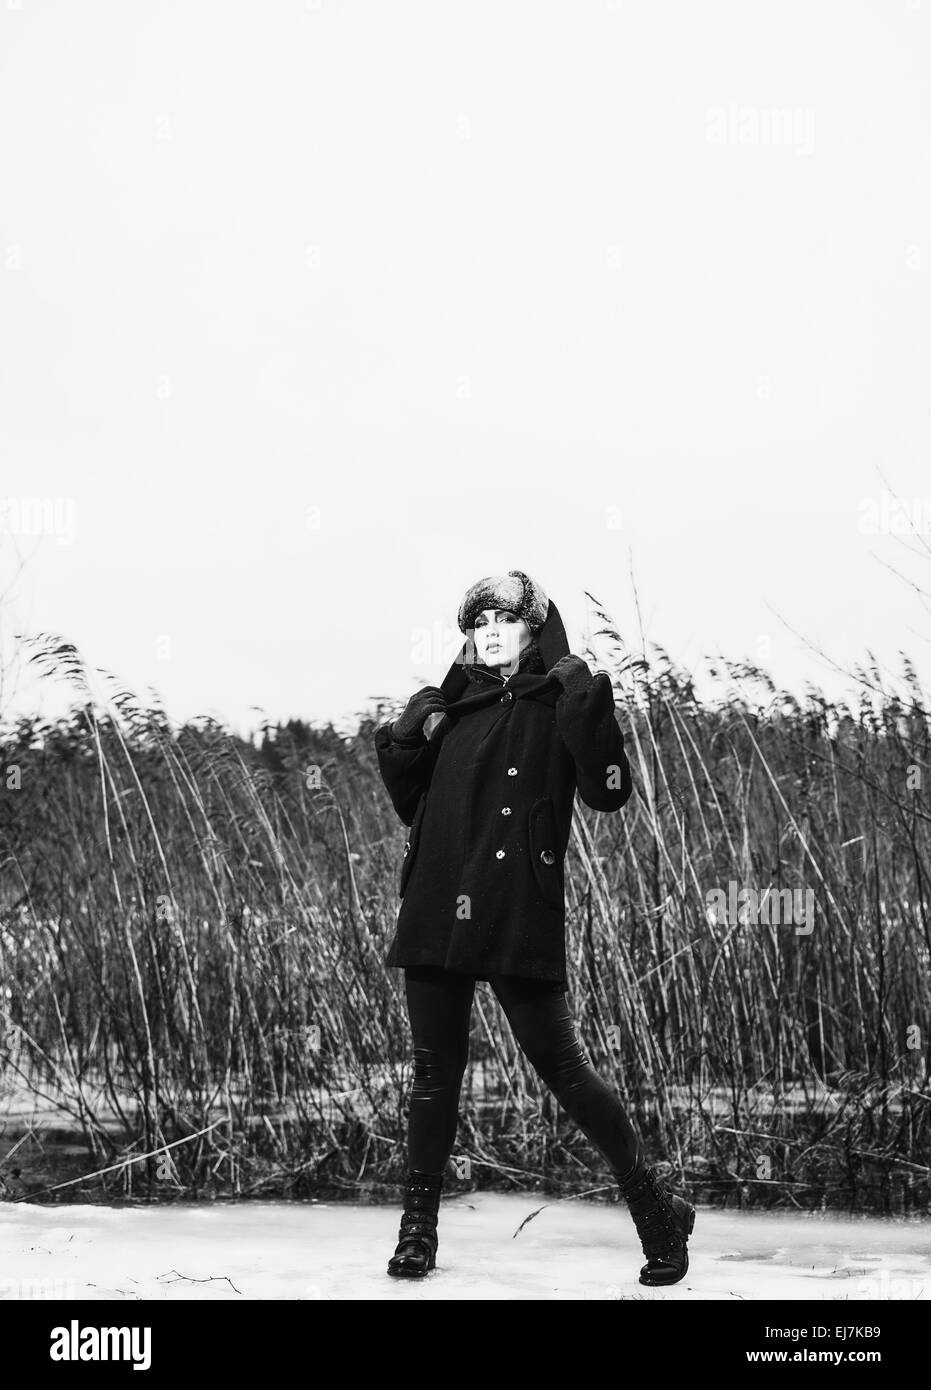 Moda donna che indossa un cappotto invernale e cappuccio di pelliccia e lei in posa davanti dei canneti, freddo pioggia a piena lunghezza nero e bianco Foto Stock